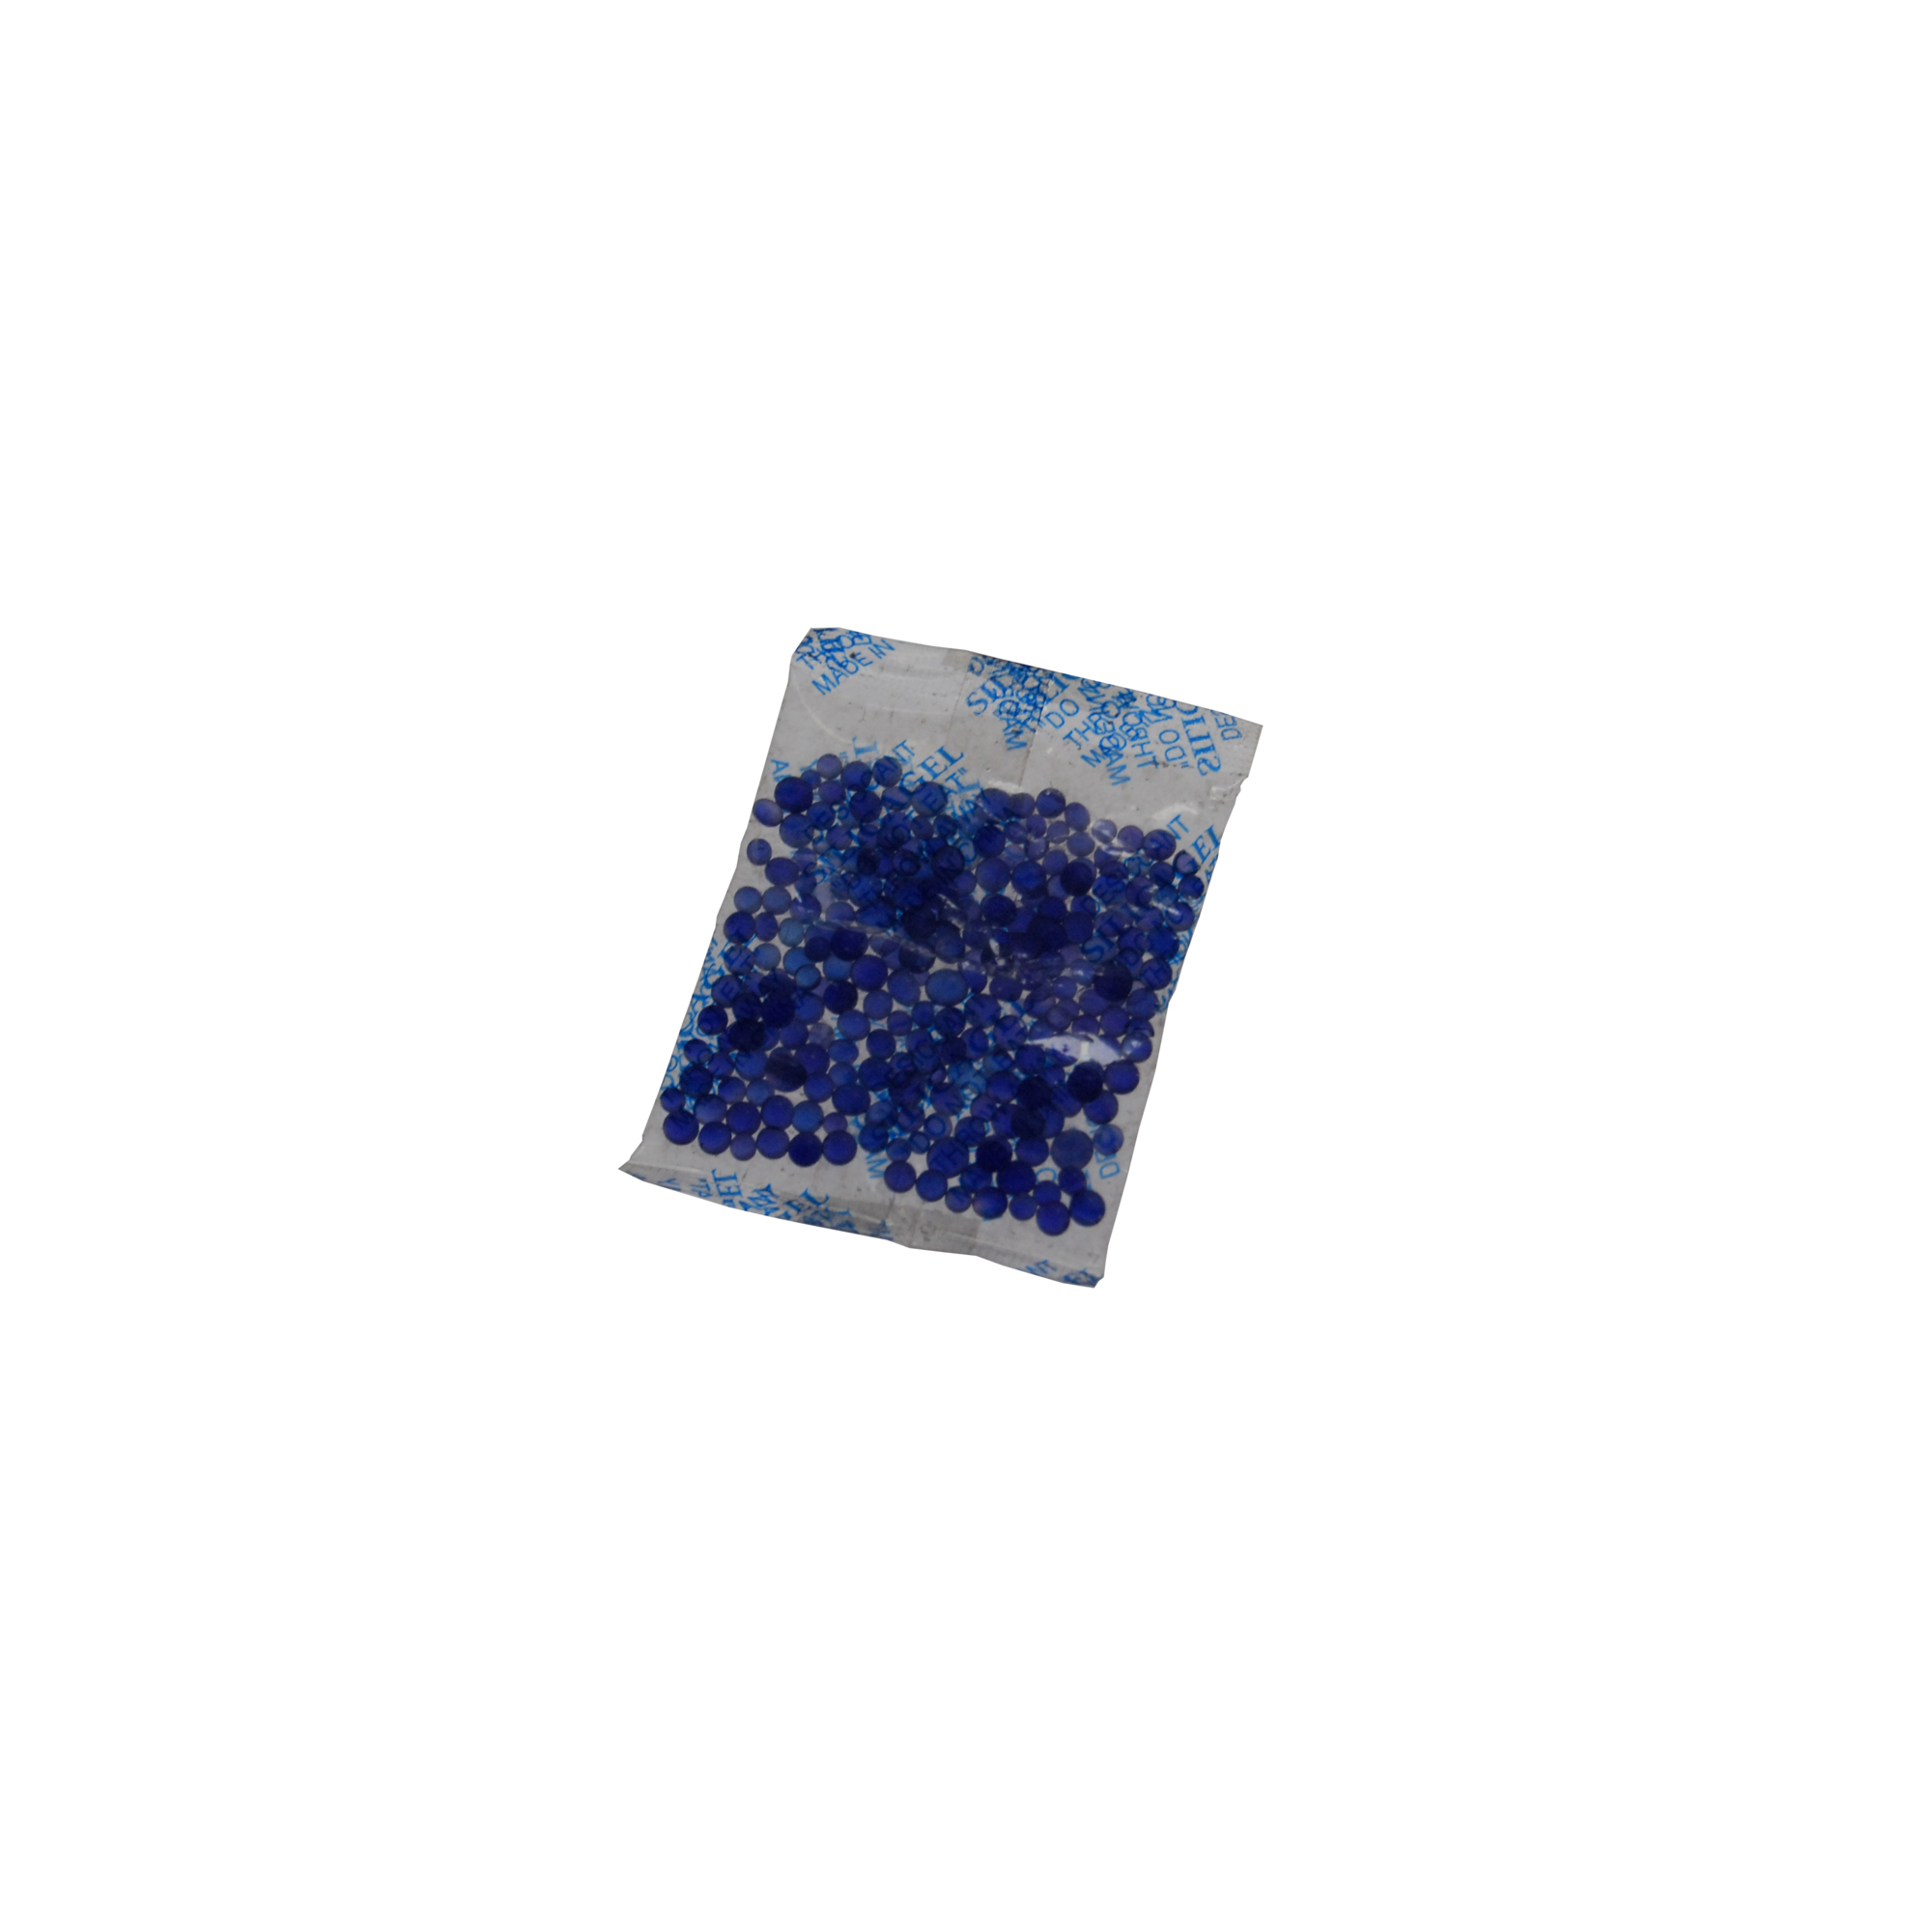 Vestil, Moisture absorbing Blue silica gel 1250 pack, Height 0.13 in, Length 2.5 in, Model BSG-5G